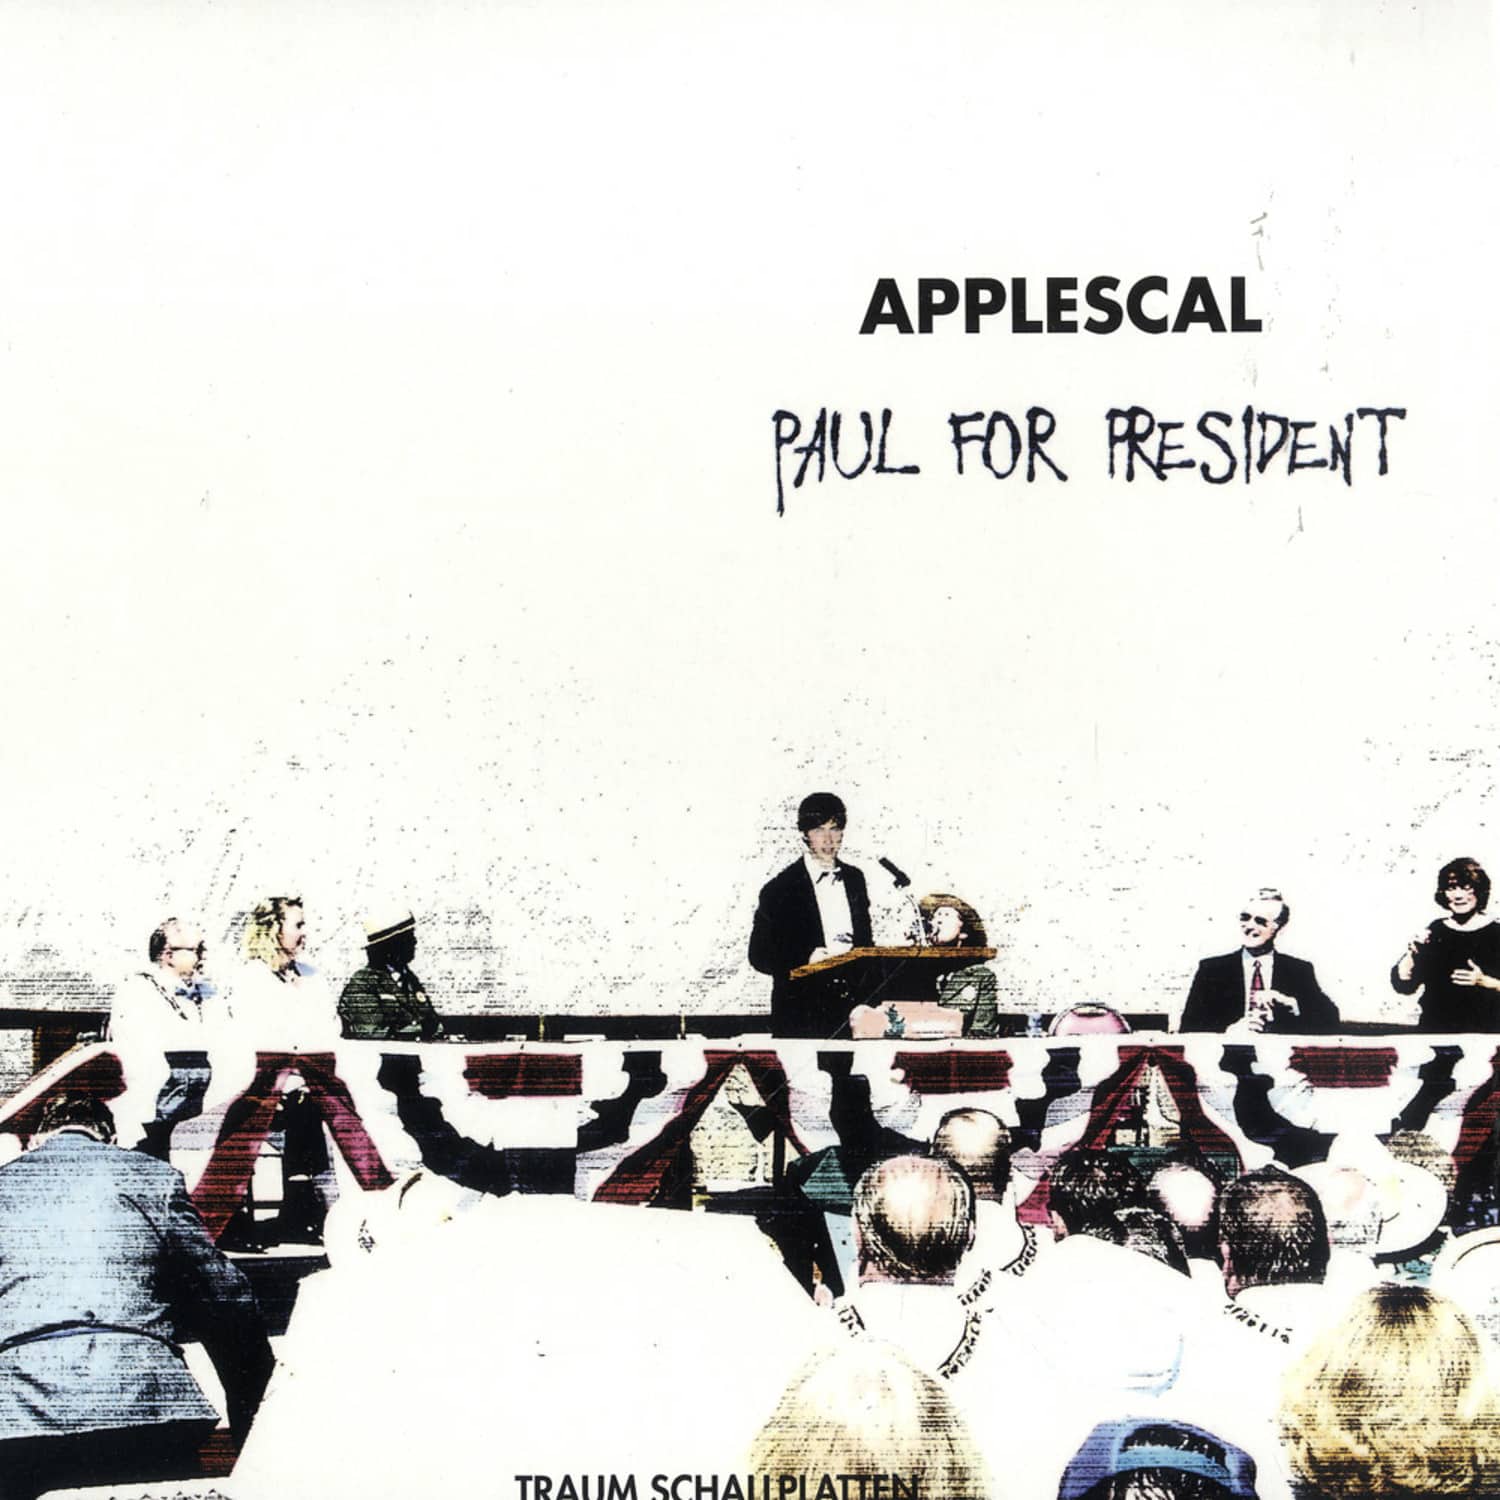 Applescal - PAUL FOR PRESIDENT